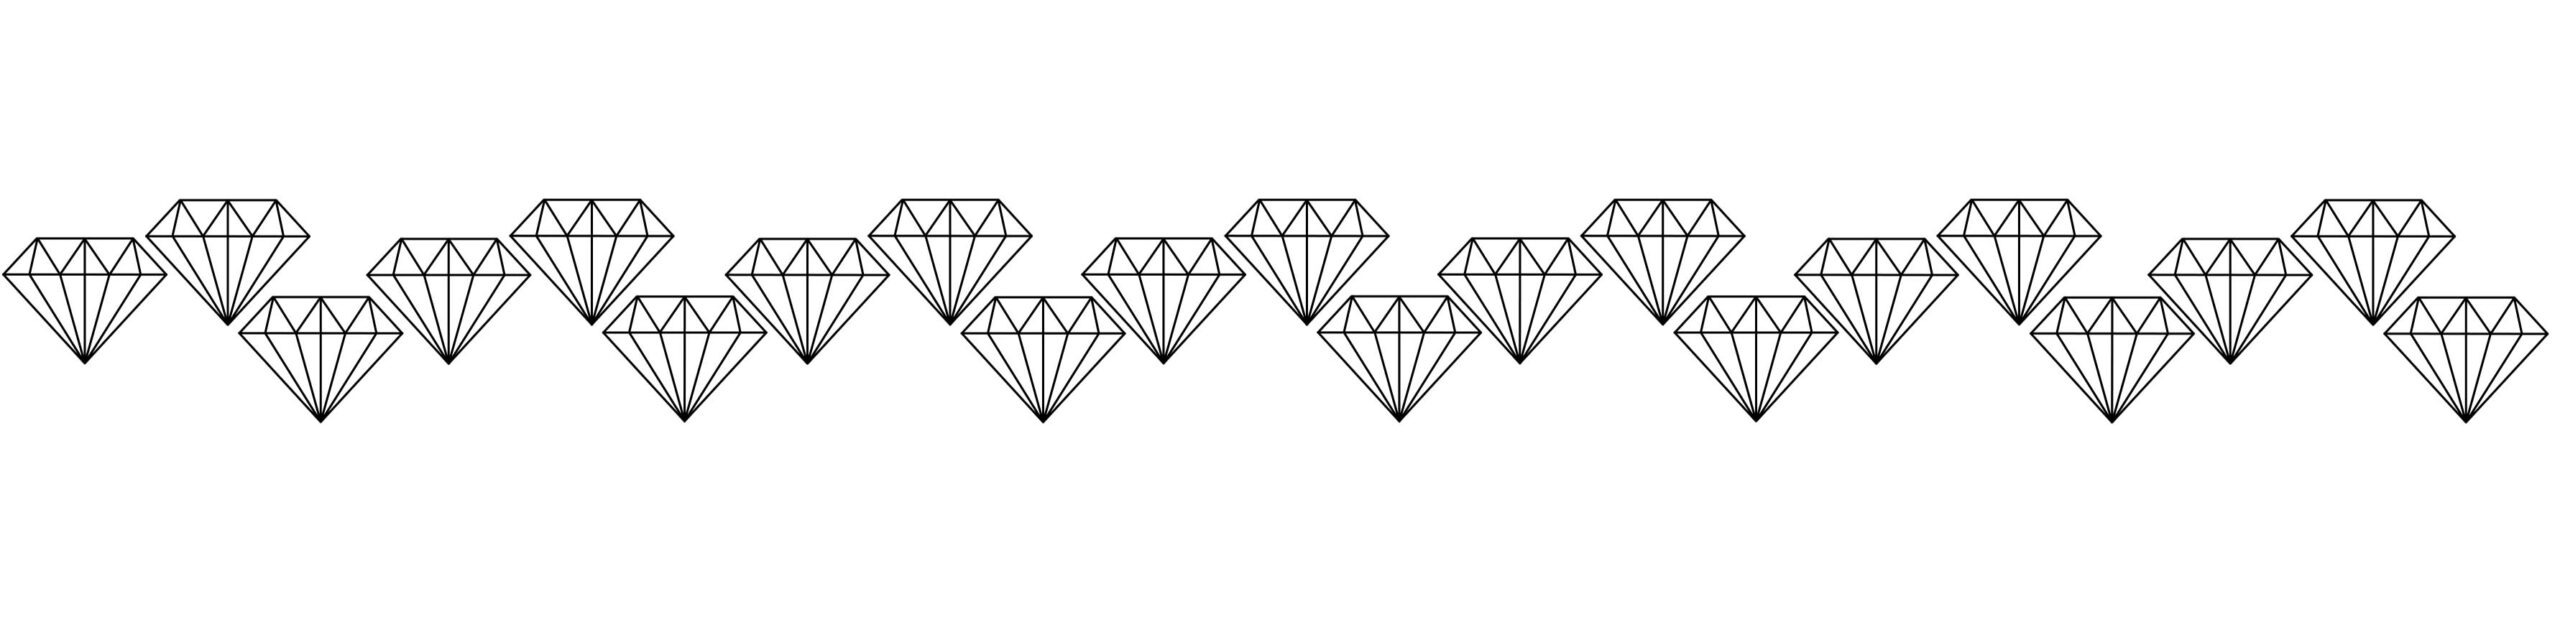 kesslers diamonds timeline